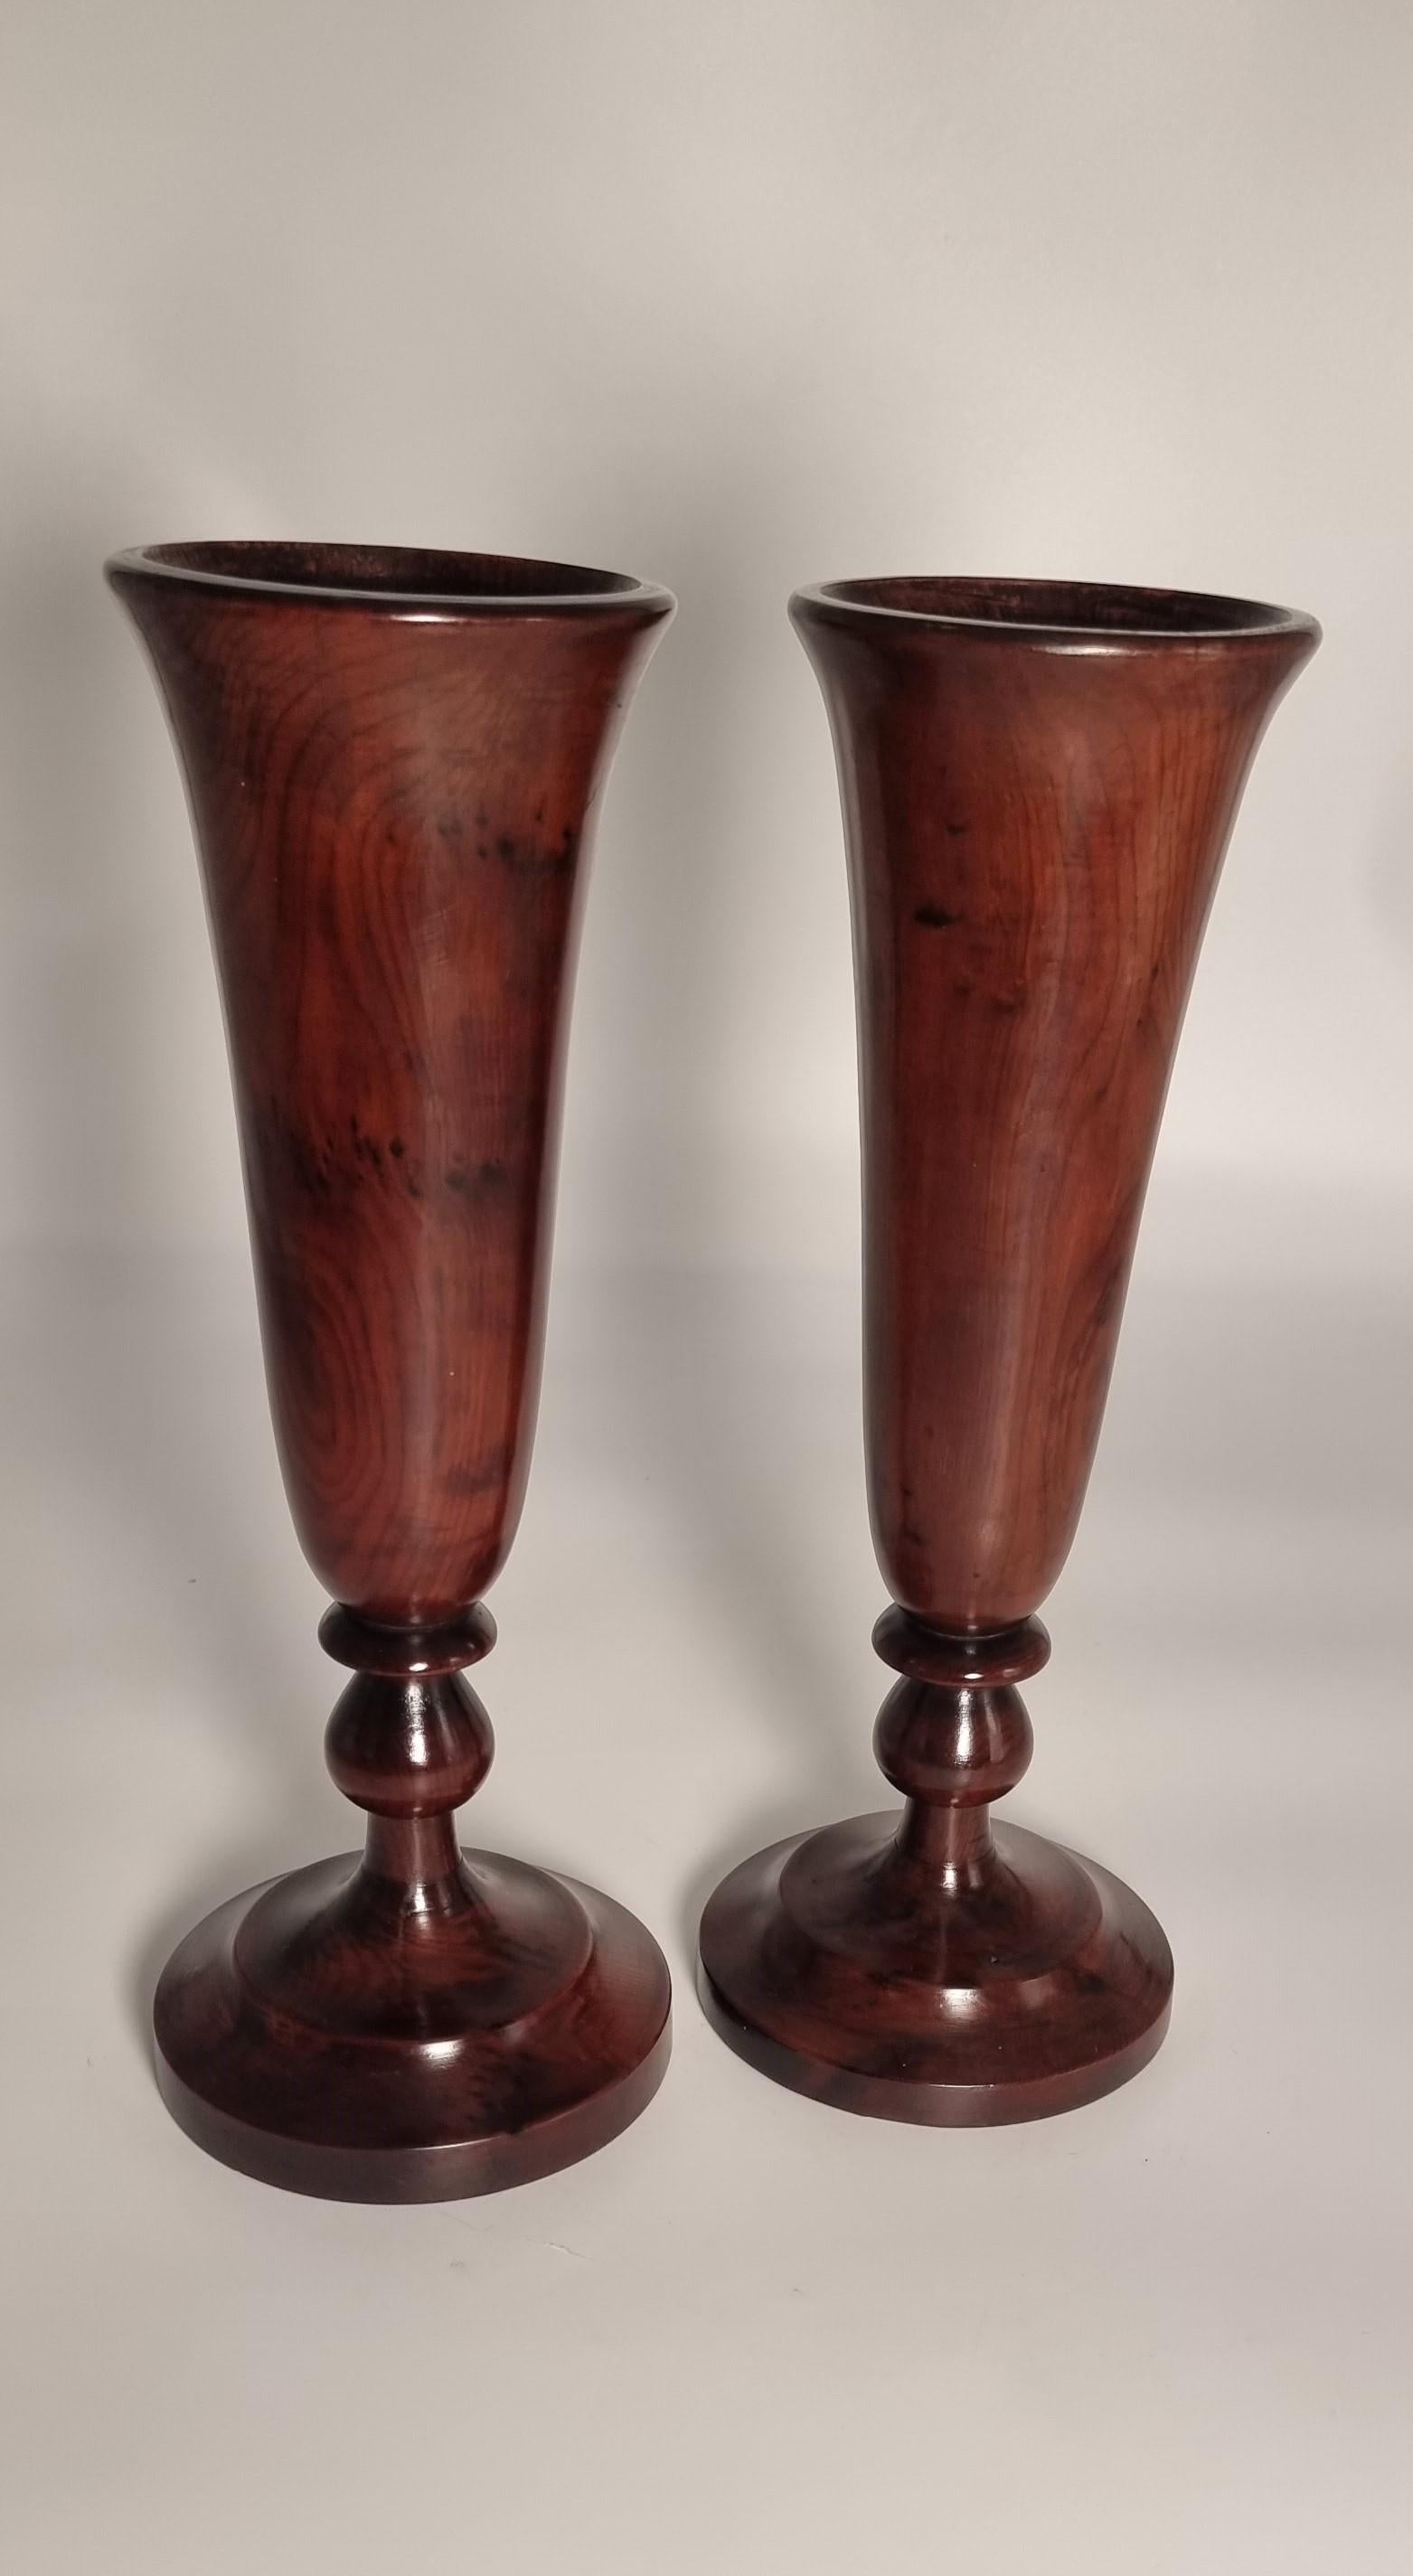 Dieses fabelhafte Paar seltener großer Vasen aus Eibenholz hat die Form von großen Kelchen mit Stiel, die dem Design von Glaswaren dieser Zeit ähneln. Sie wurden auf einer Drechselbank aus einheimischem, gut gemasertem Eibenholz gedrechselt. Sie